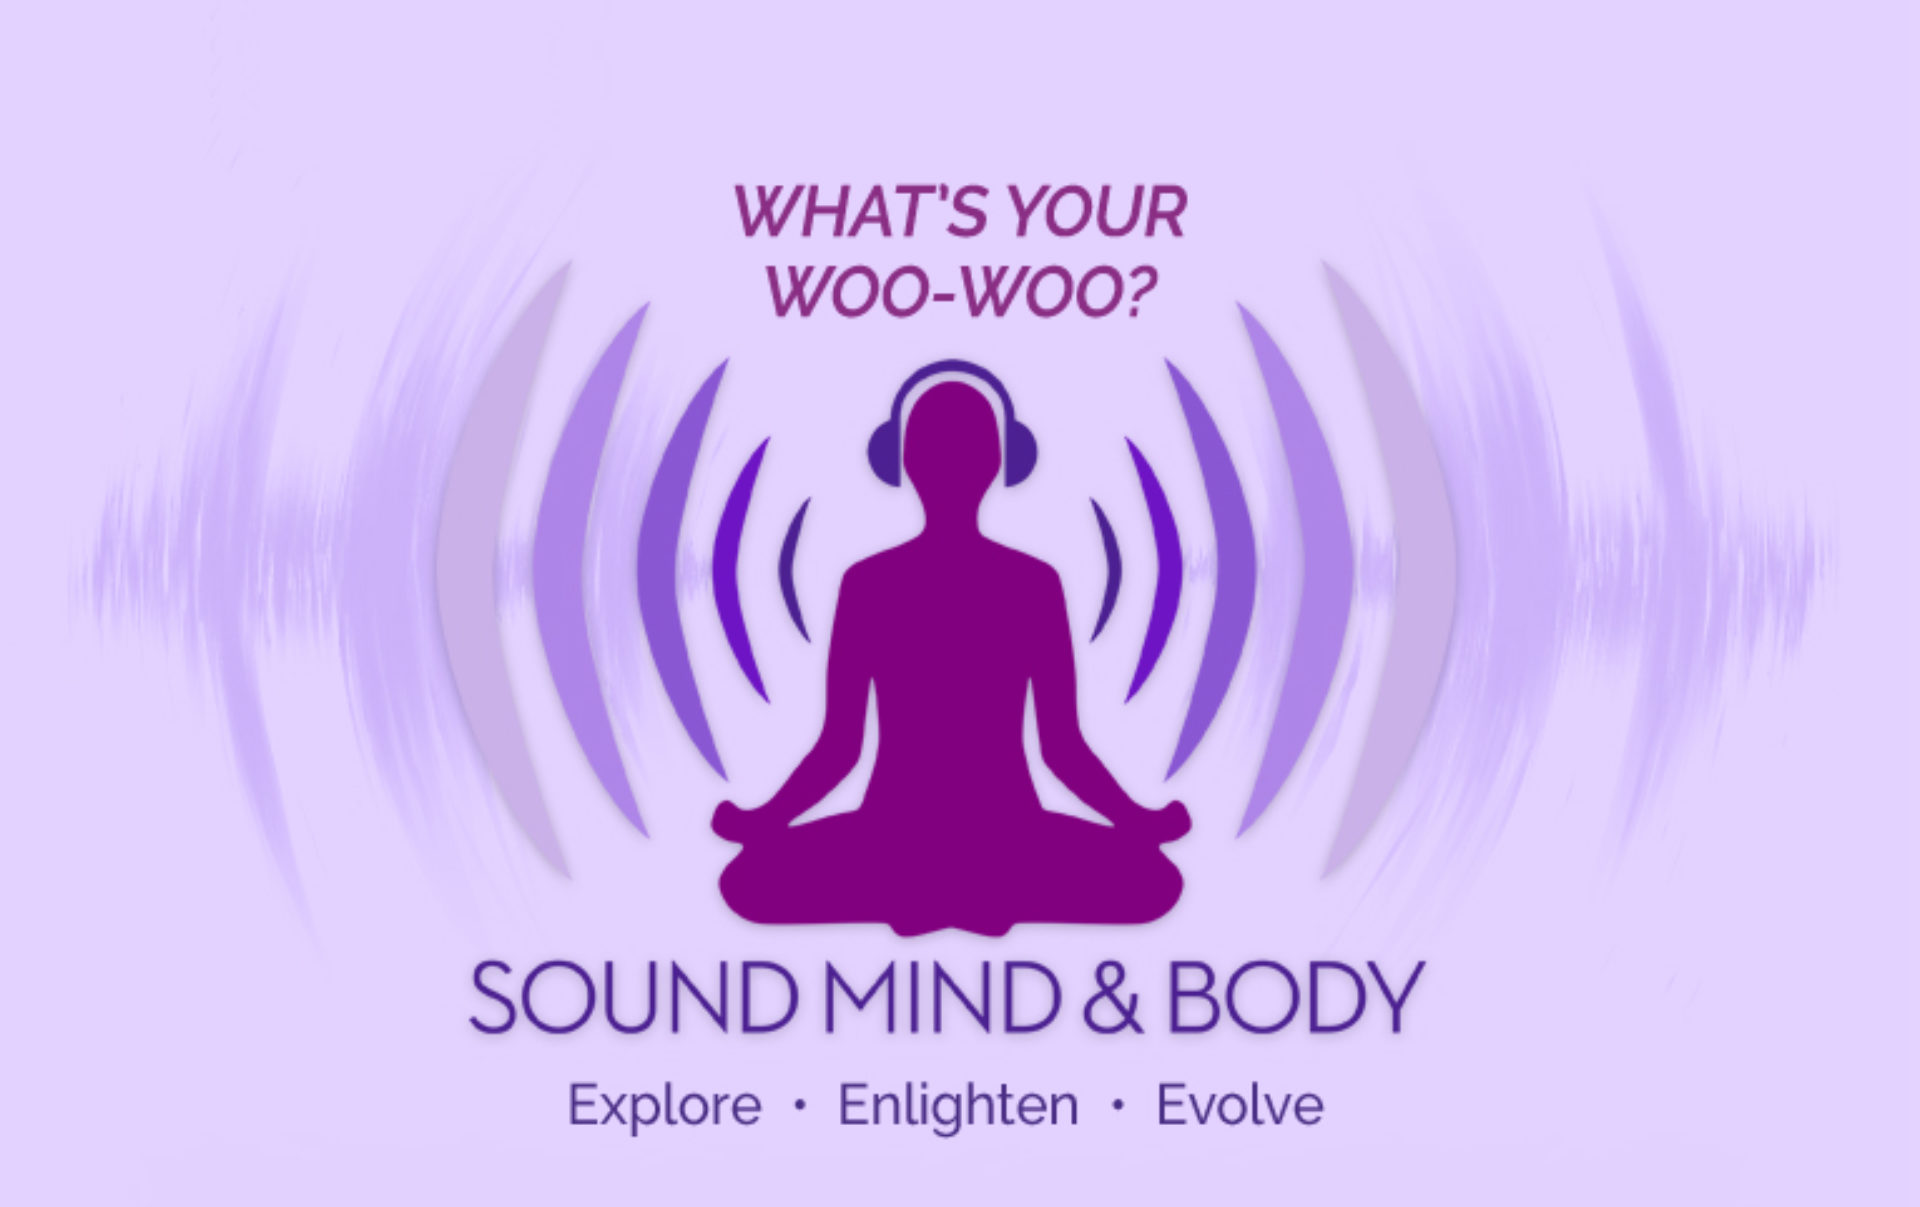 Sound Mind & Body Podcast